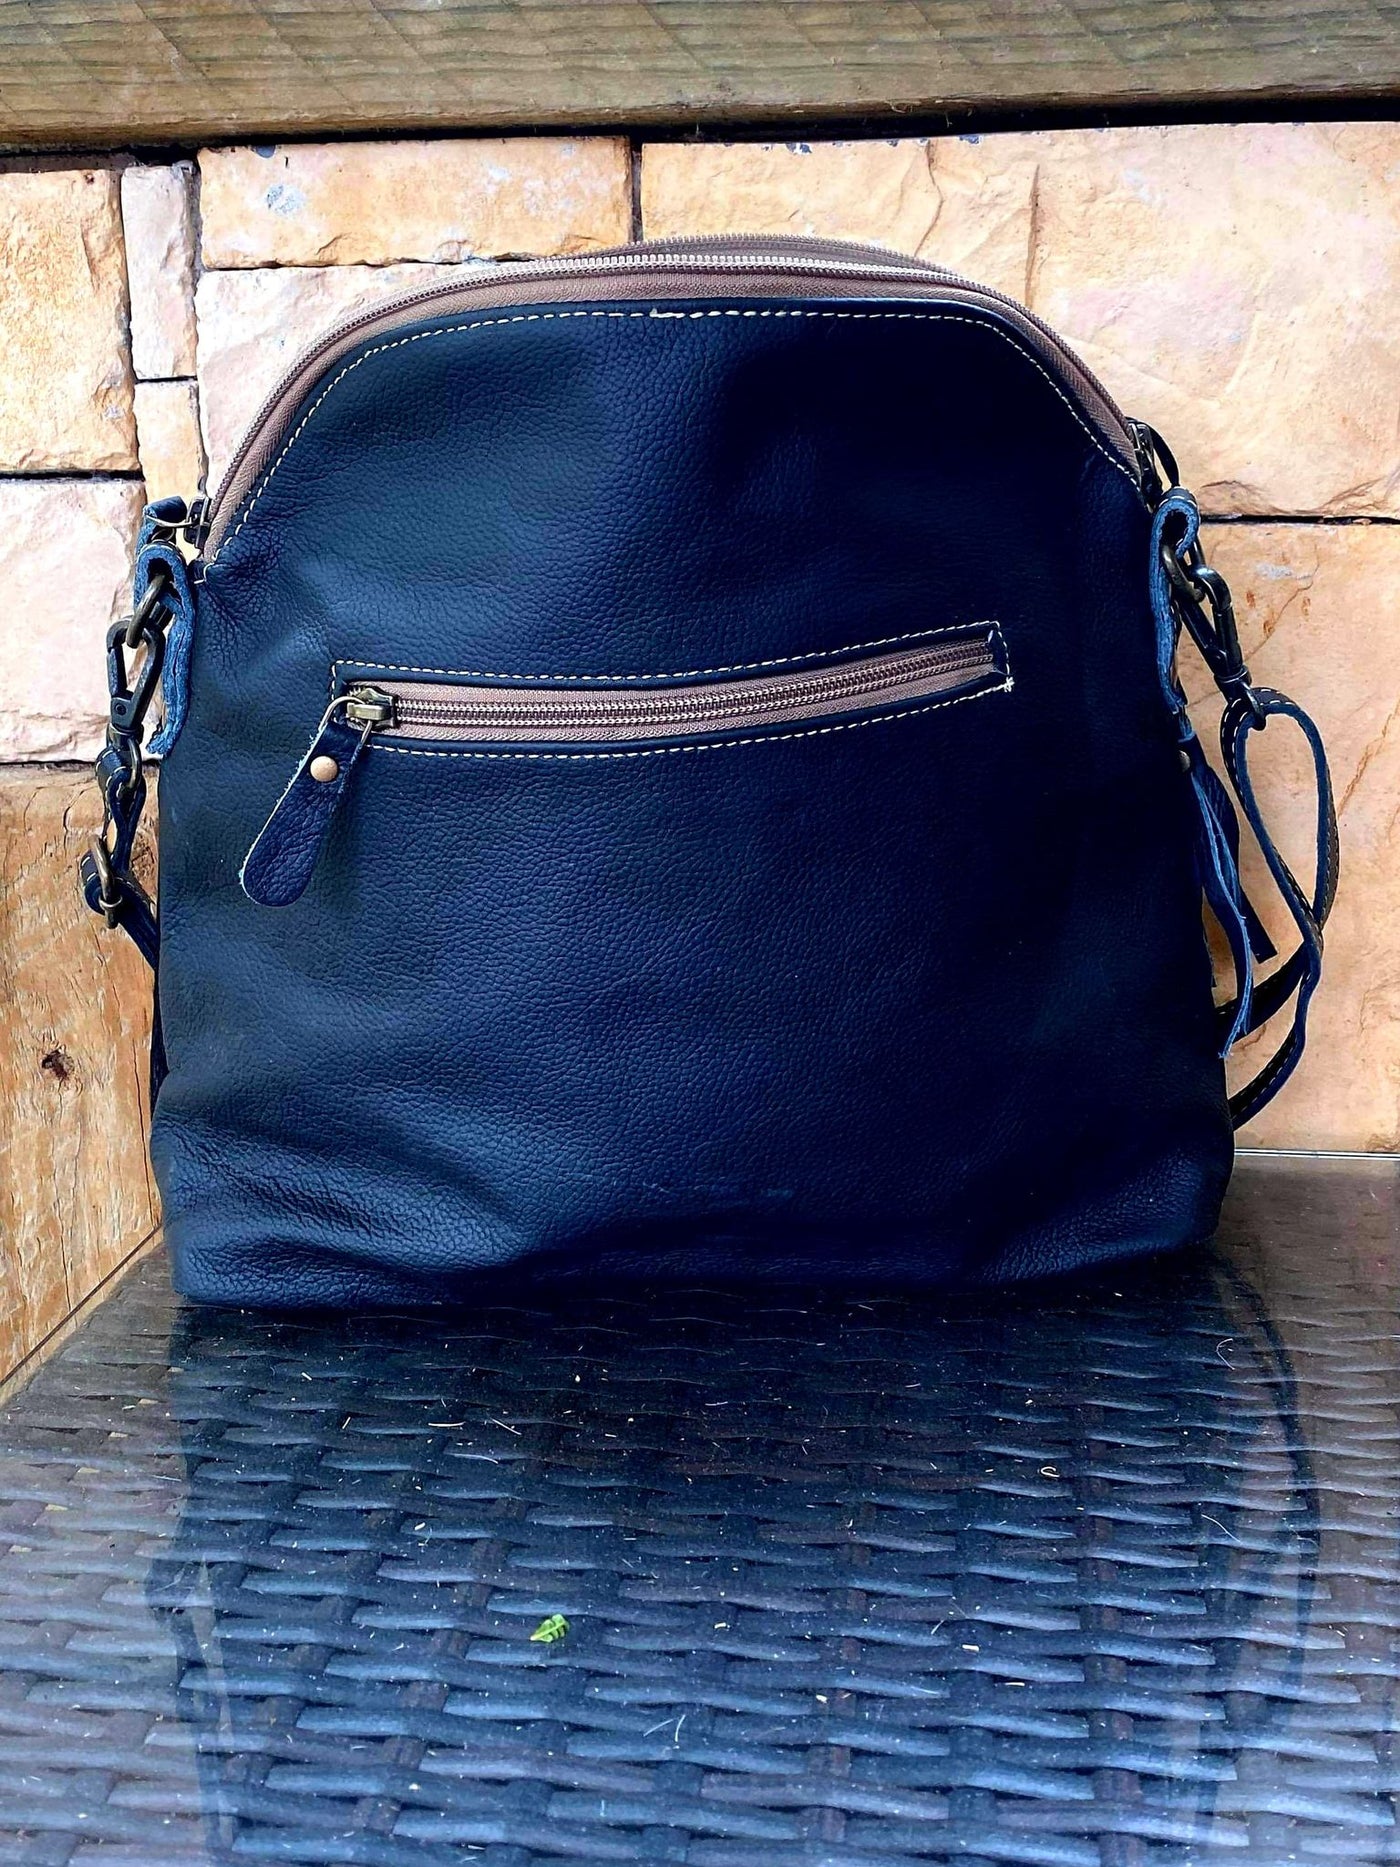 Western Hide & Leather Soft Shoulder Handbag